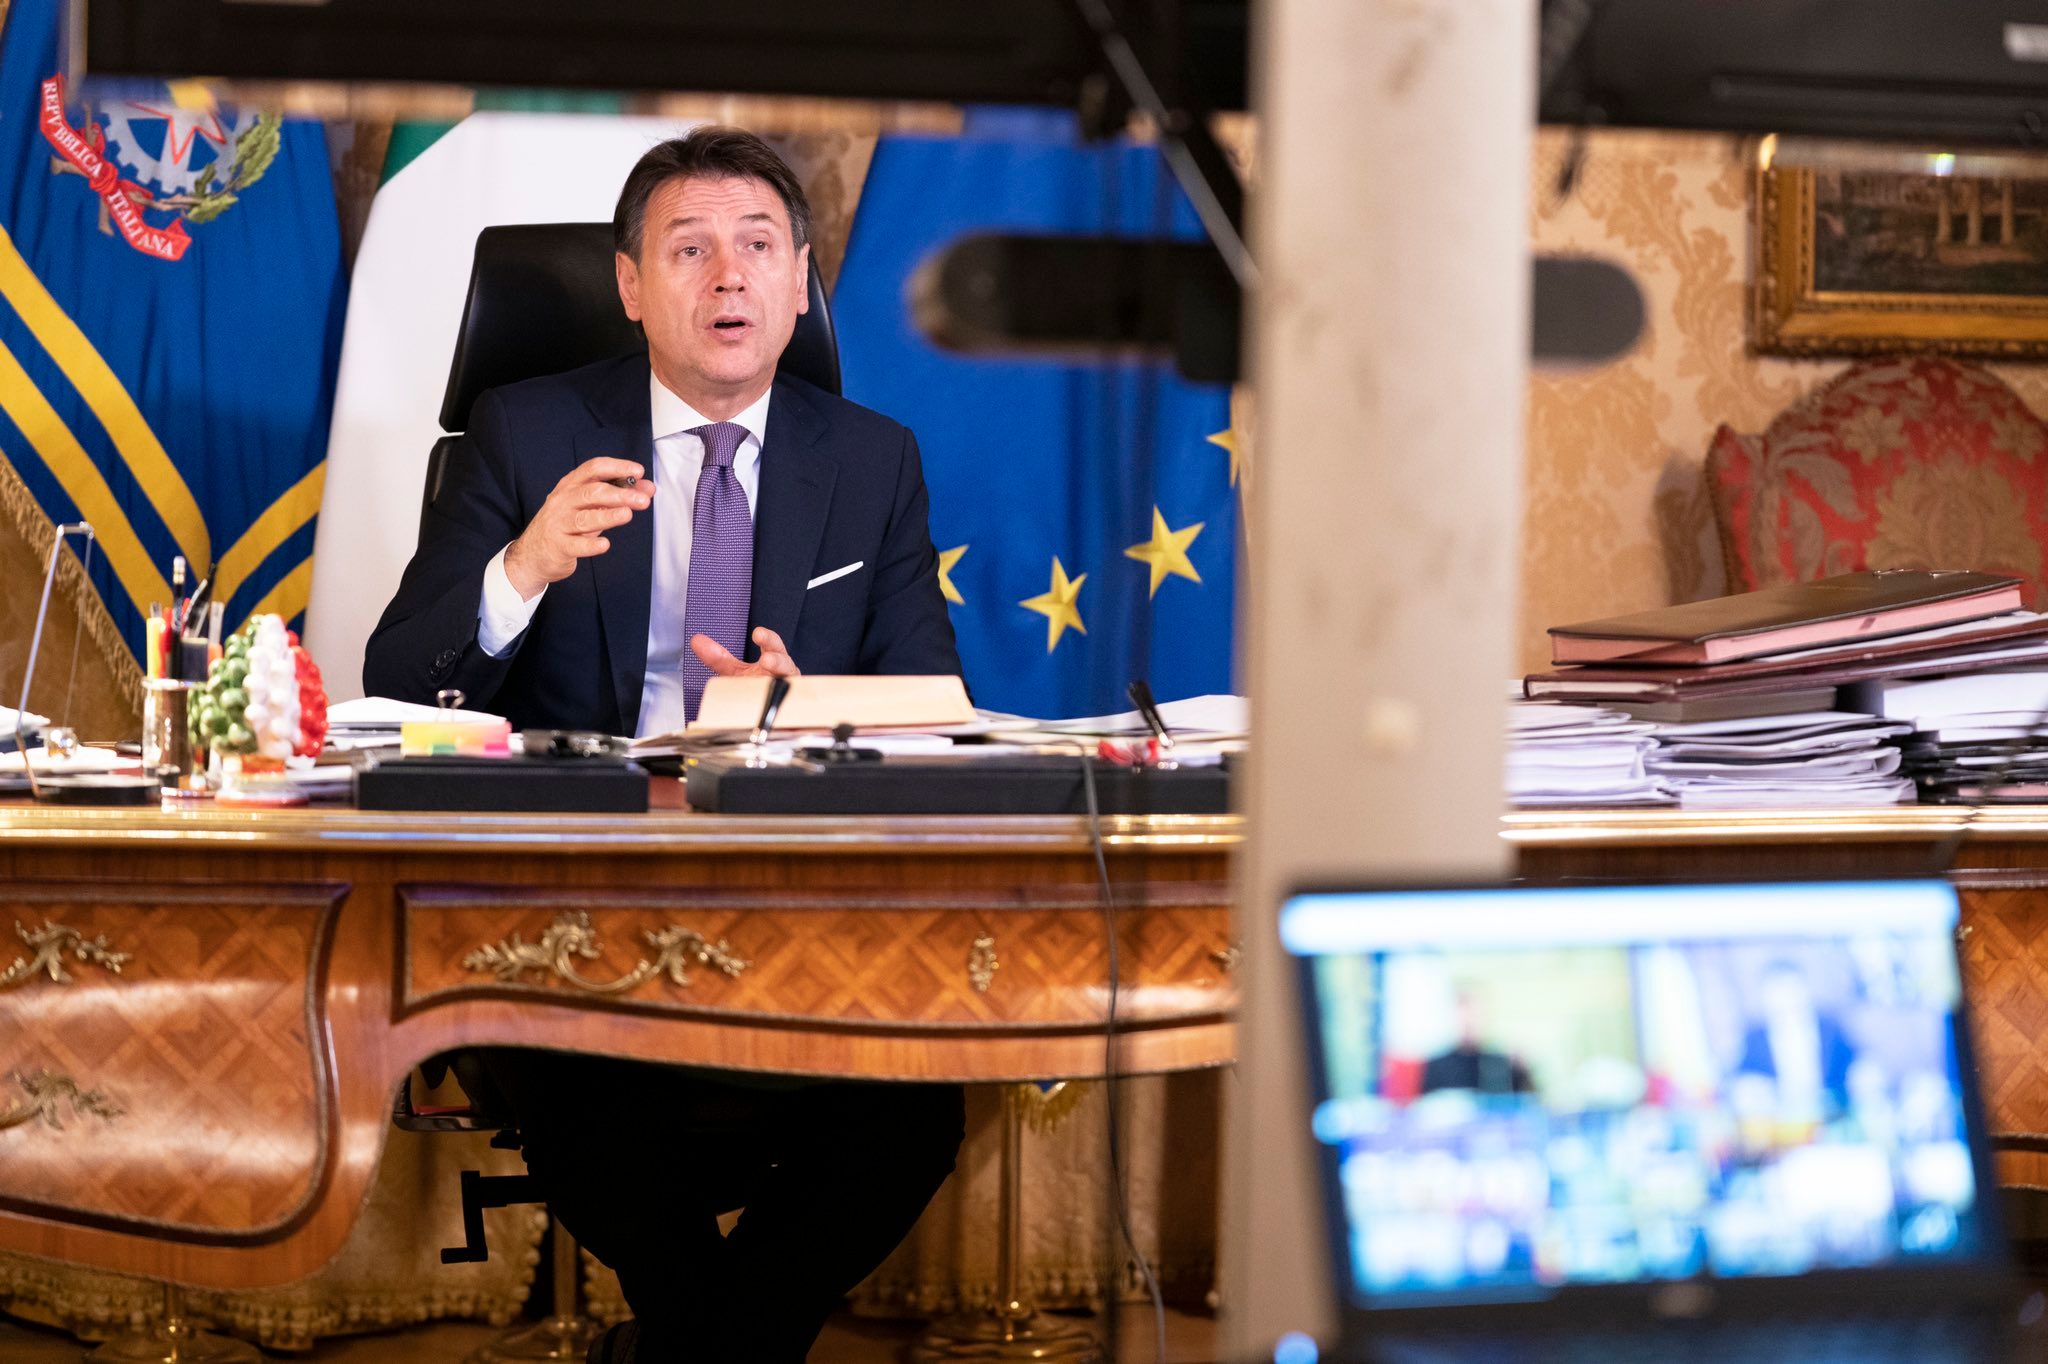 Italy PM Giuseppe Conte resigns, confirms President Sergio Mattarella